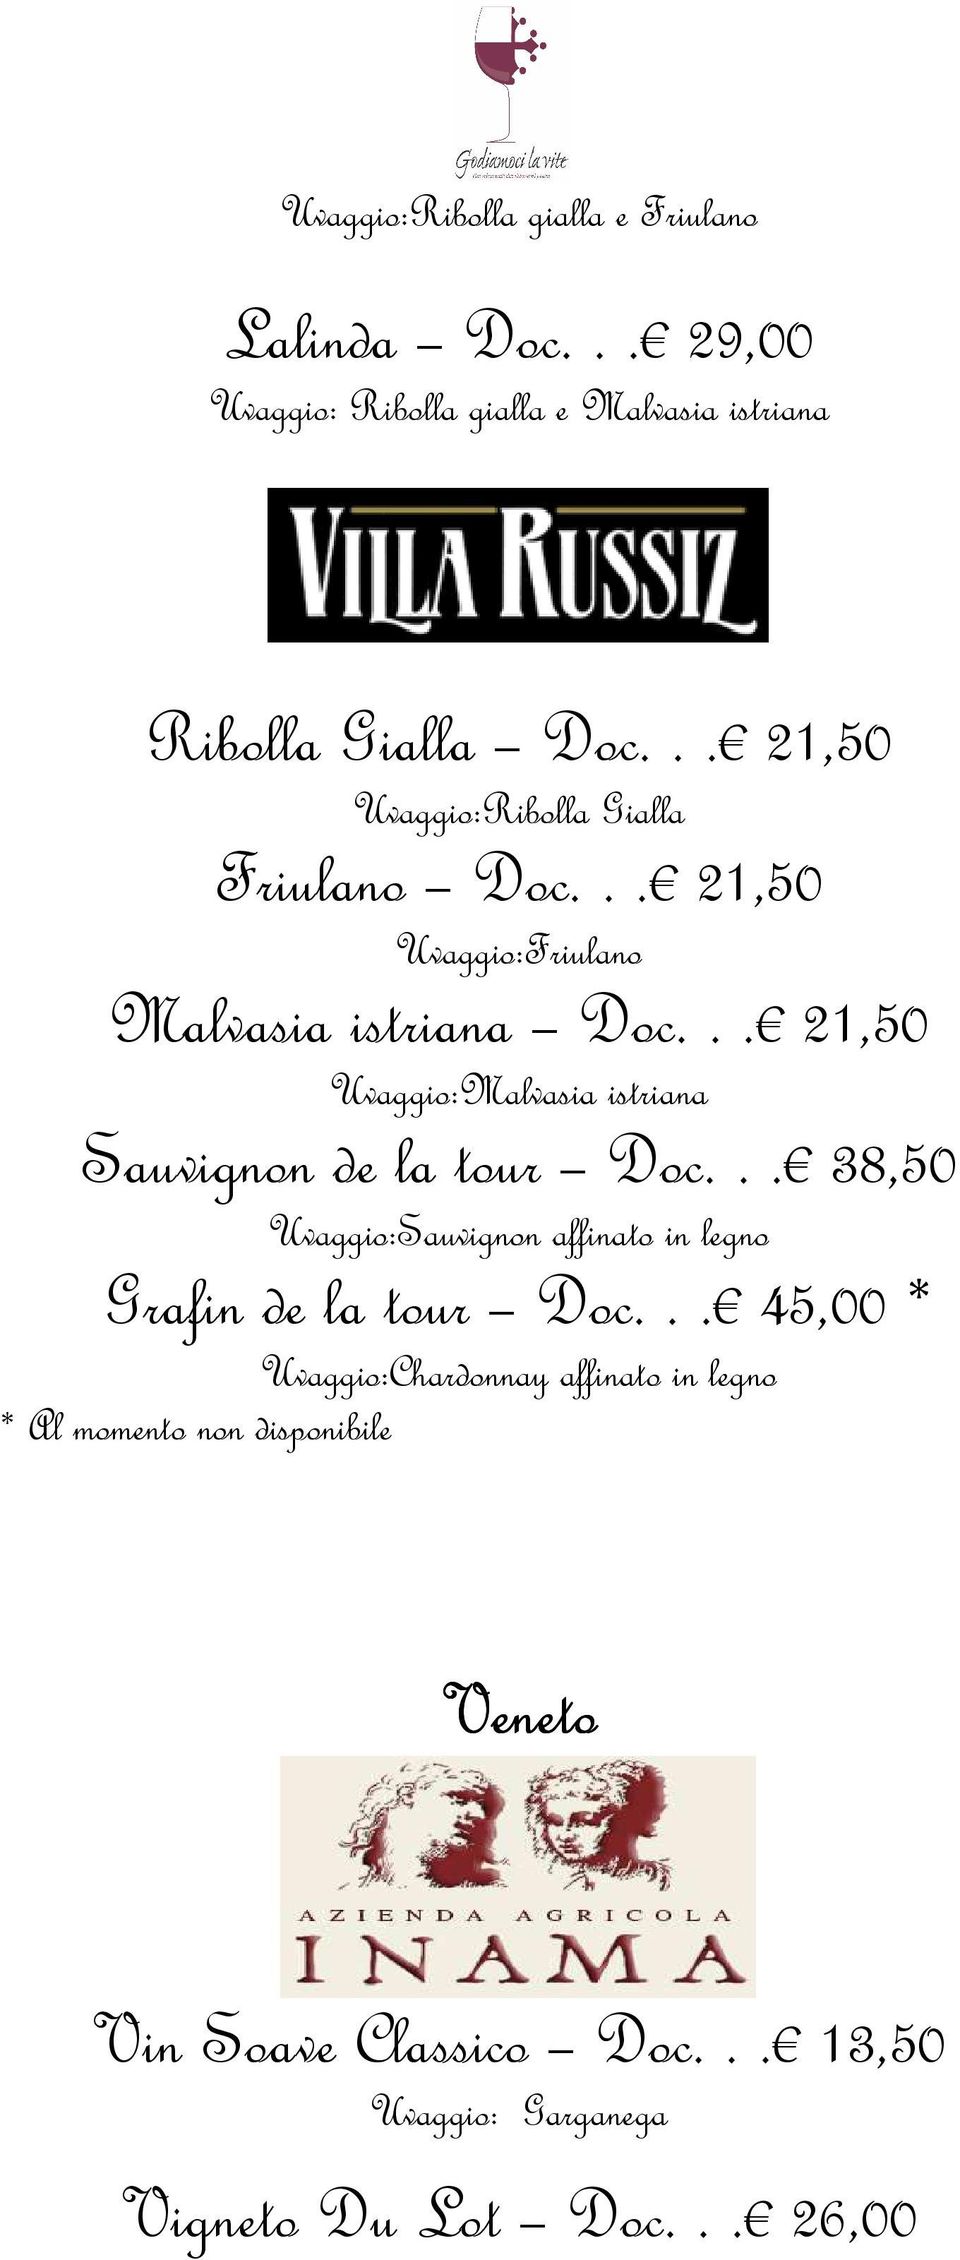 .. 21,50 Uvaggio:Malvasia istriana Sauvignon de la tour Doc... 38,50 Uvaggio:Sauvignon affinato in legno Grafin de la tour Doc.